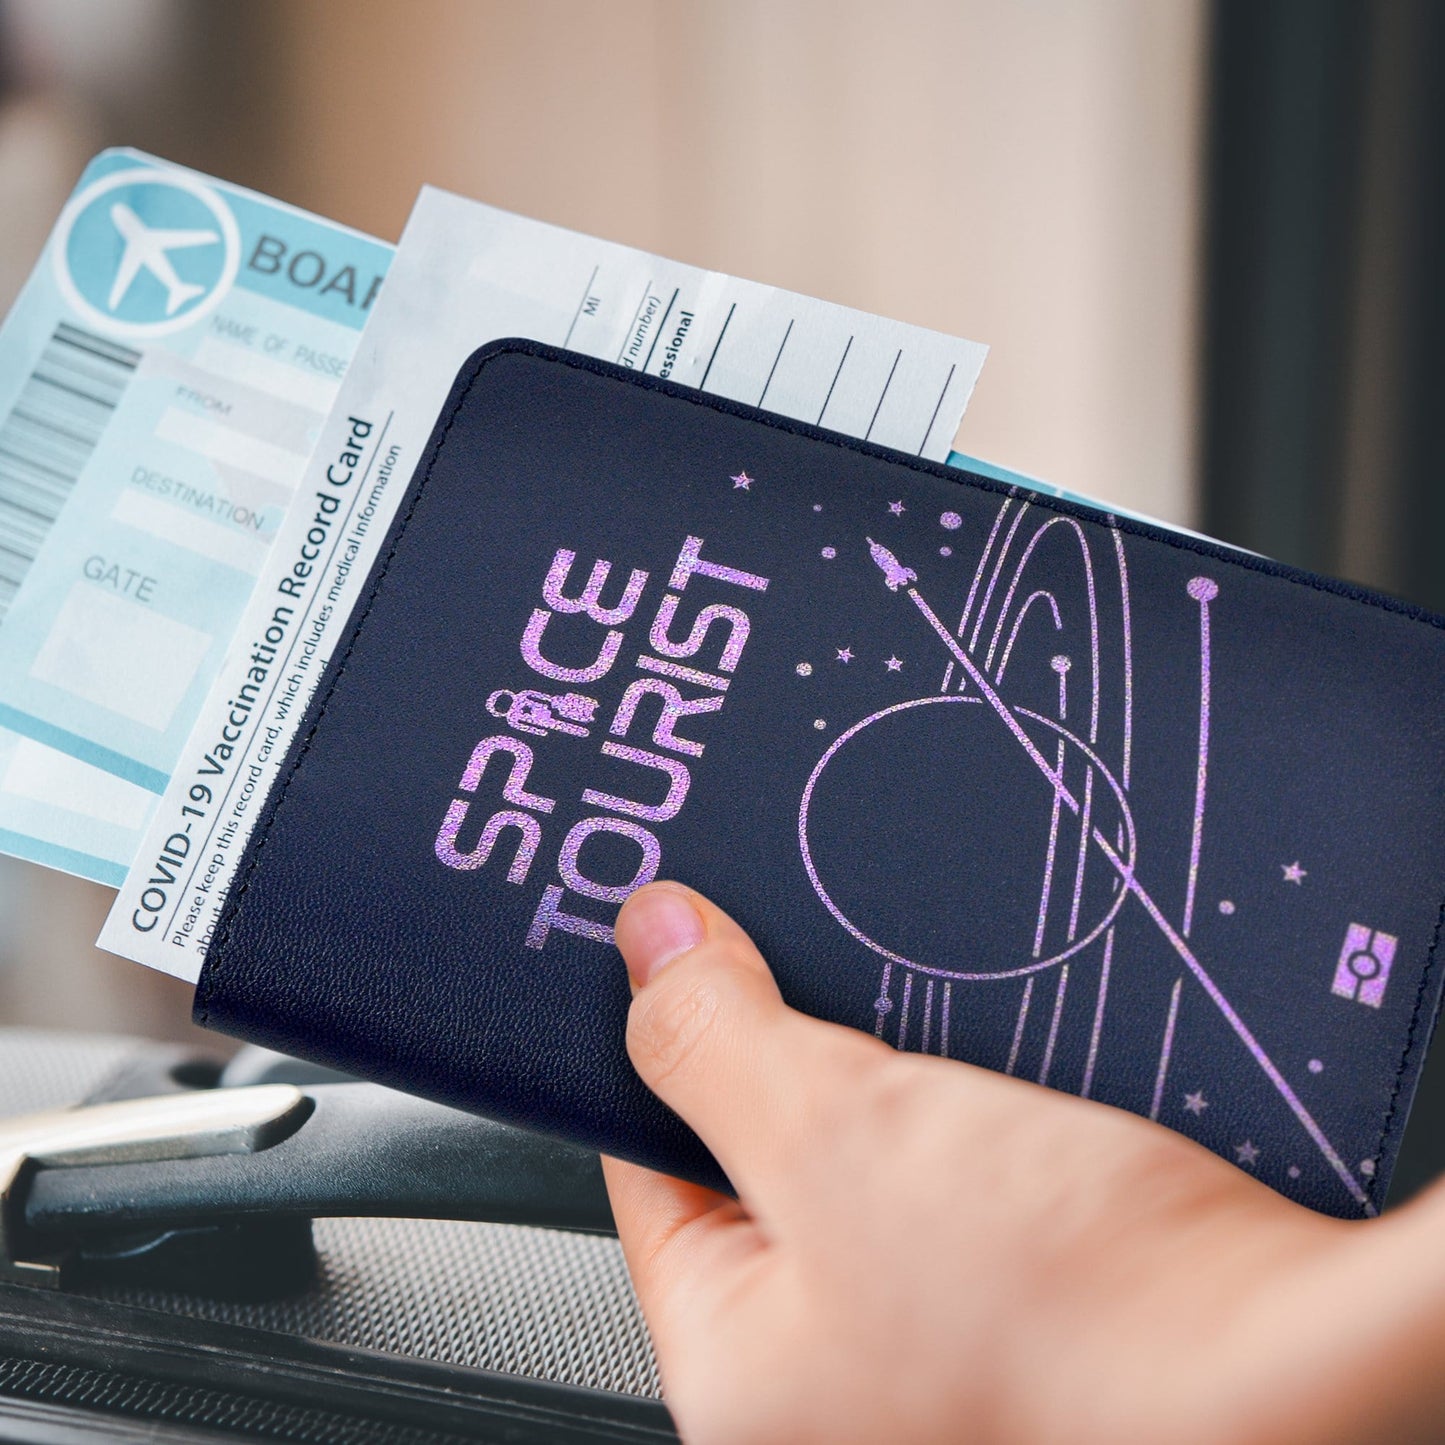 Space Tourist Passport Wallet